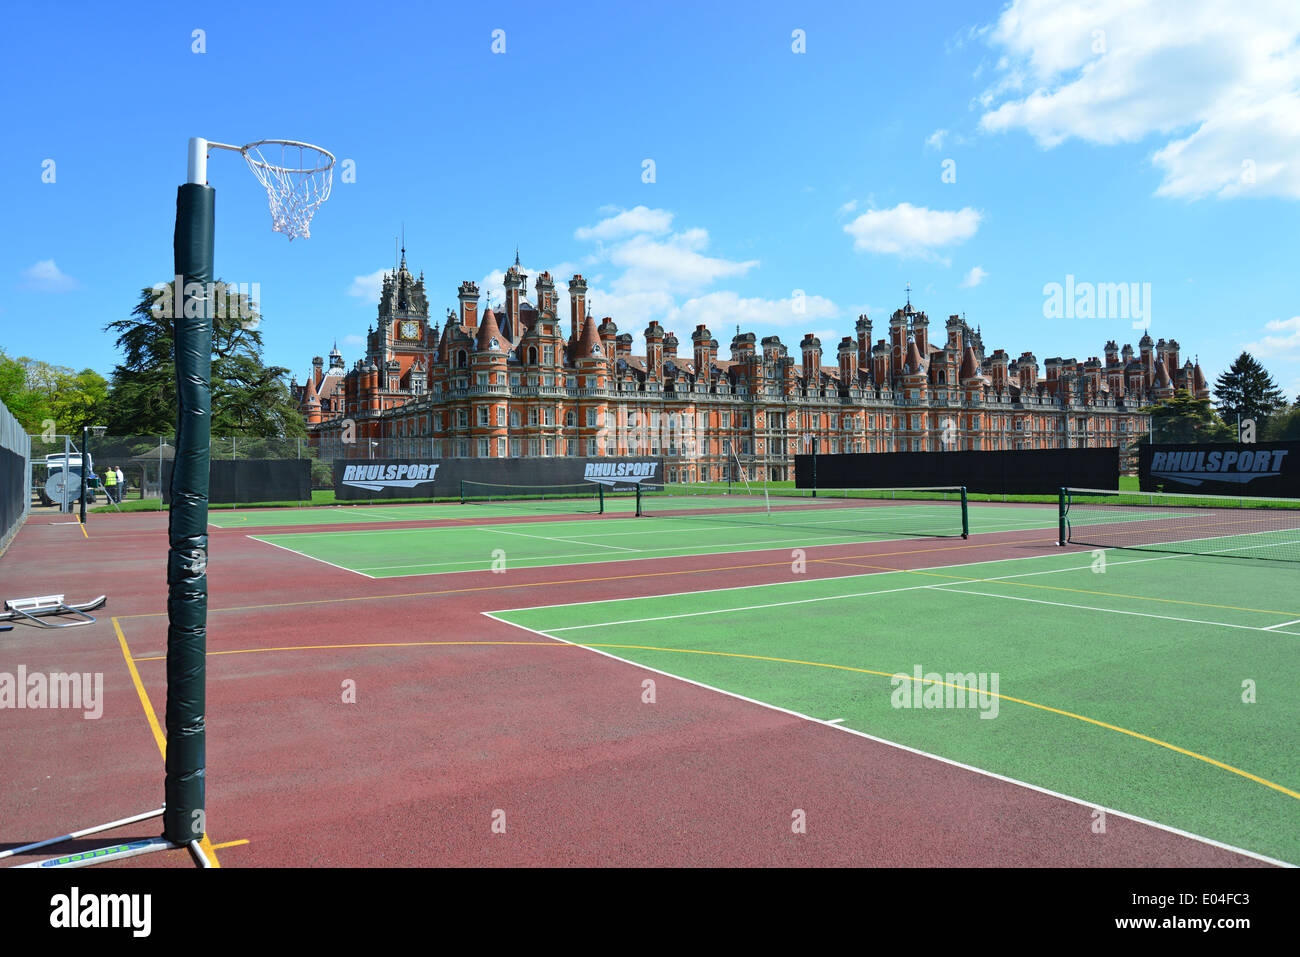 Le bâtiment du Fondateur et des courts de tennis, Royal Holloway, Université de Londres, Egham Hill, Egham, Surrey, Angleterre, Royaume-Uni Banque D'Images